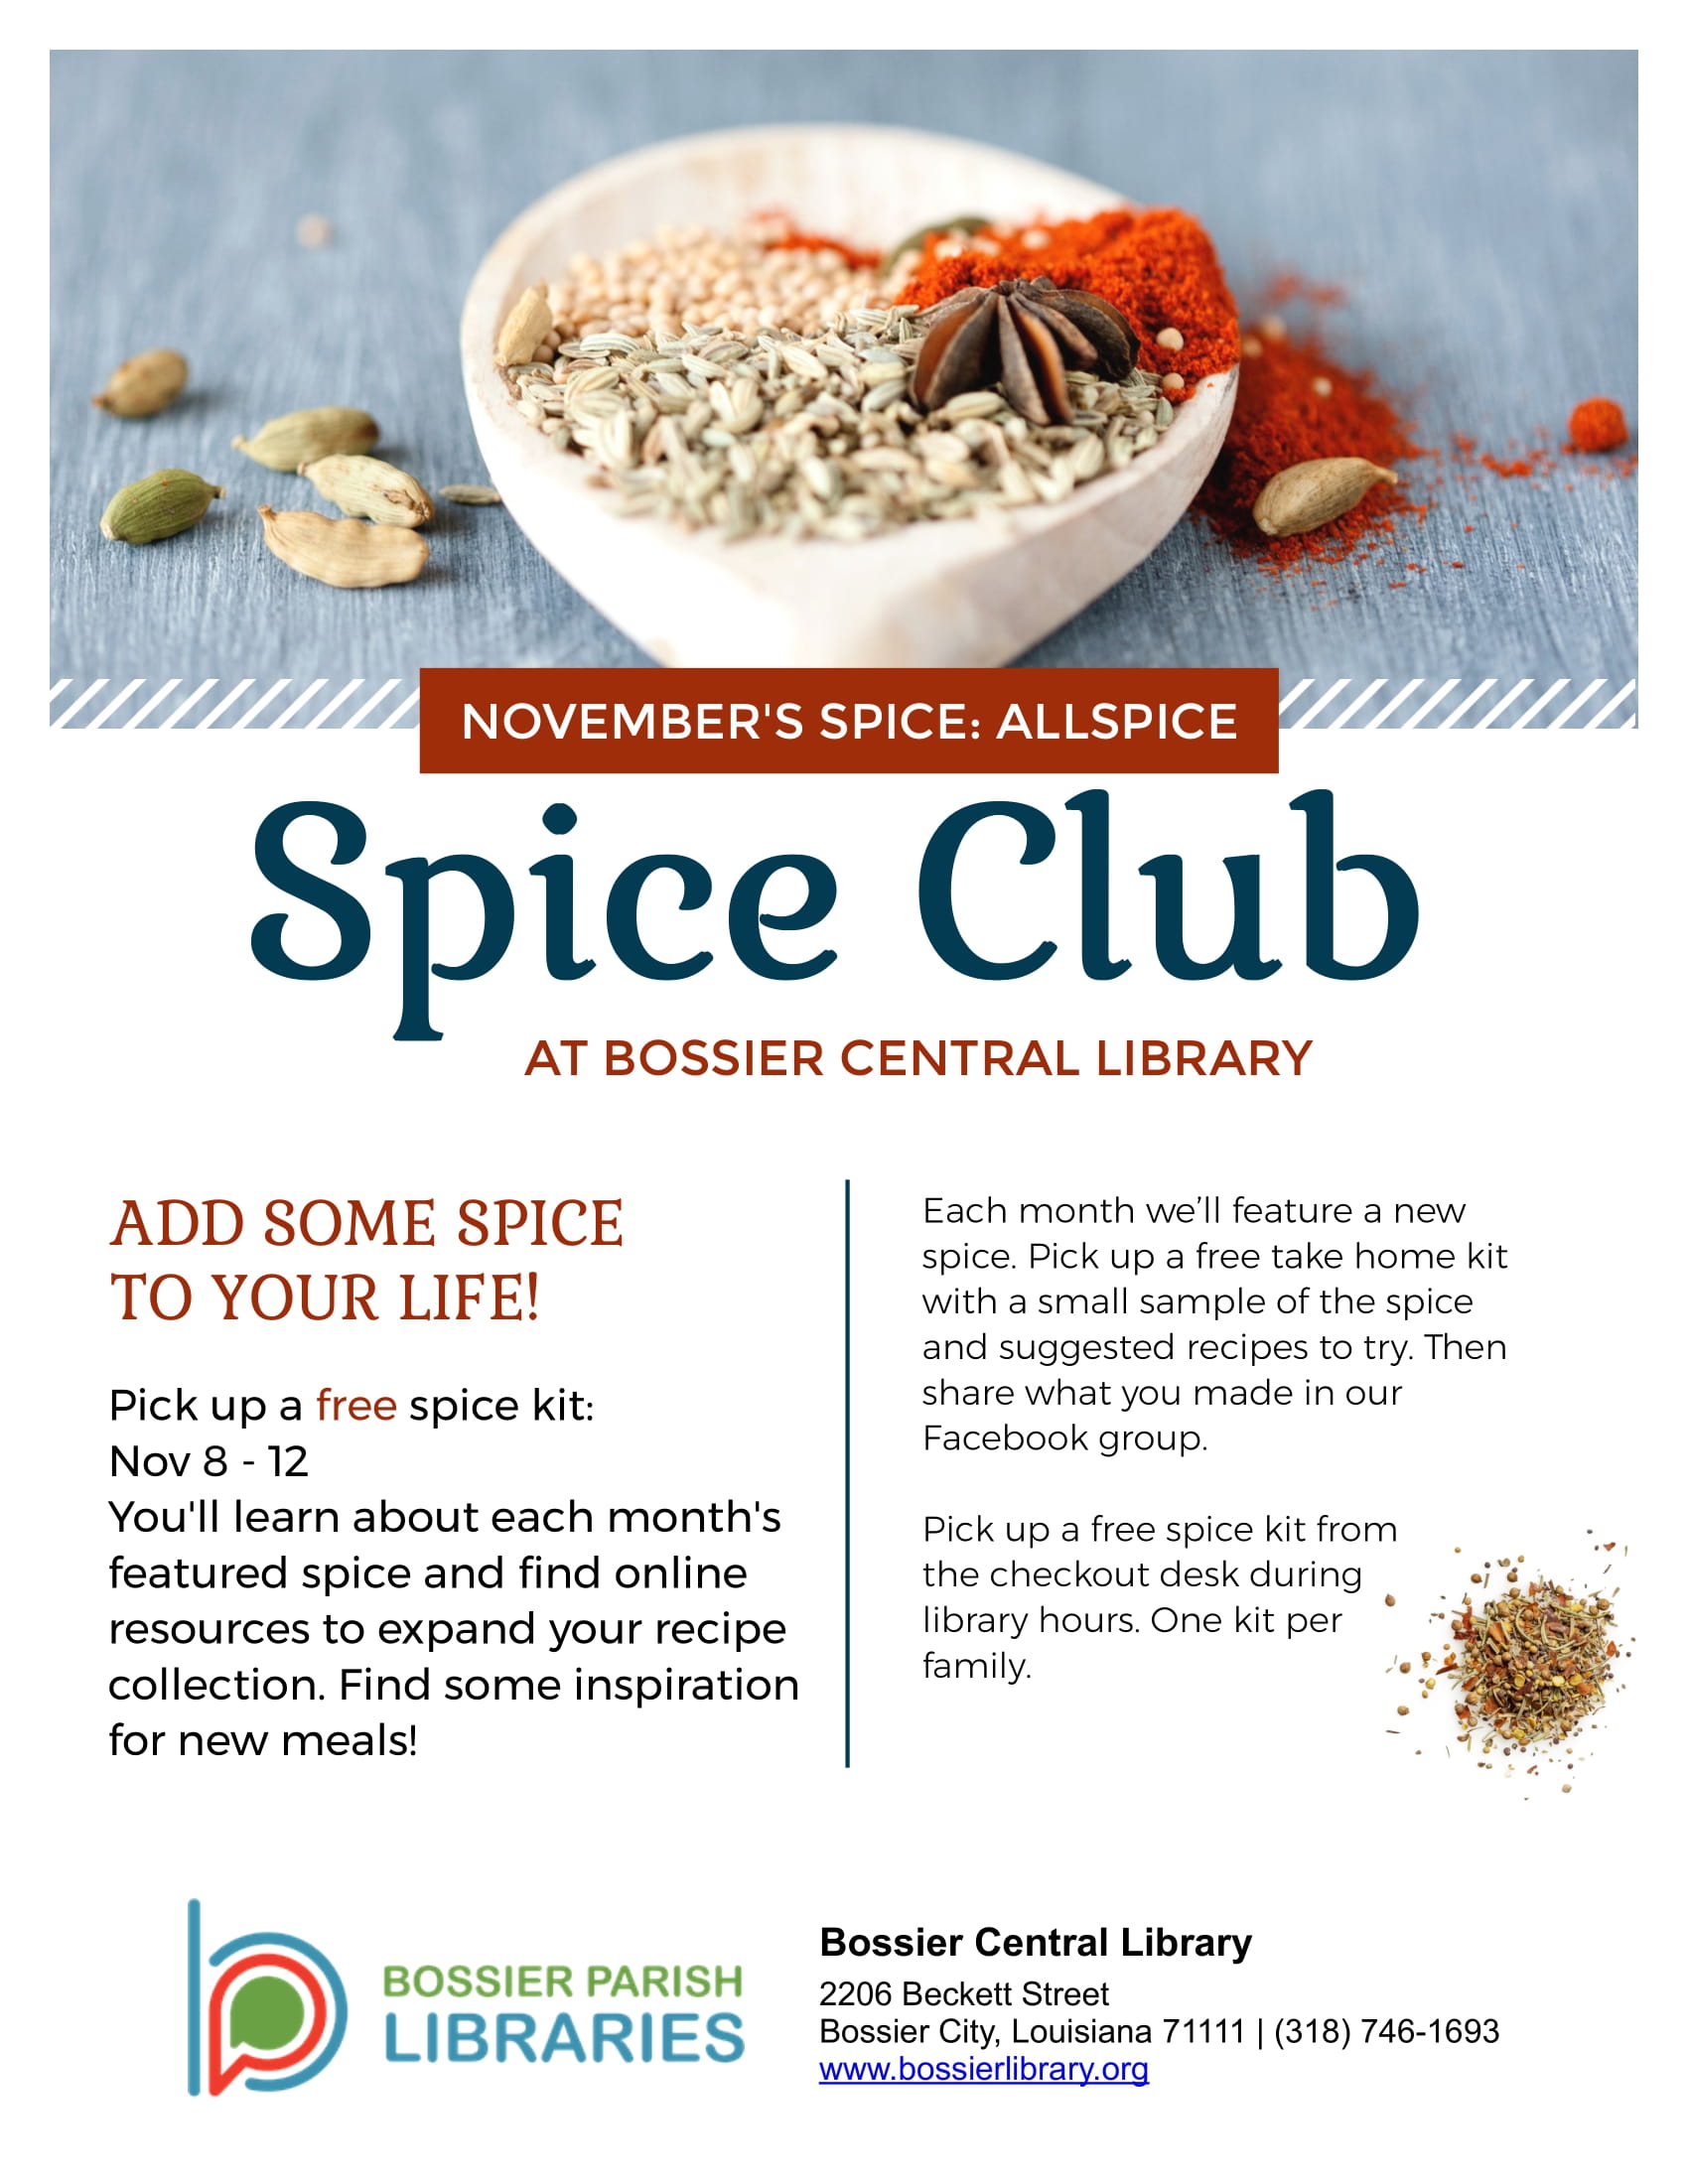 Spice club - Allspice graphic